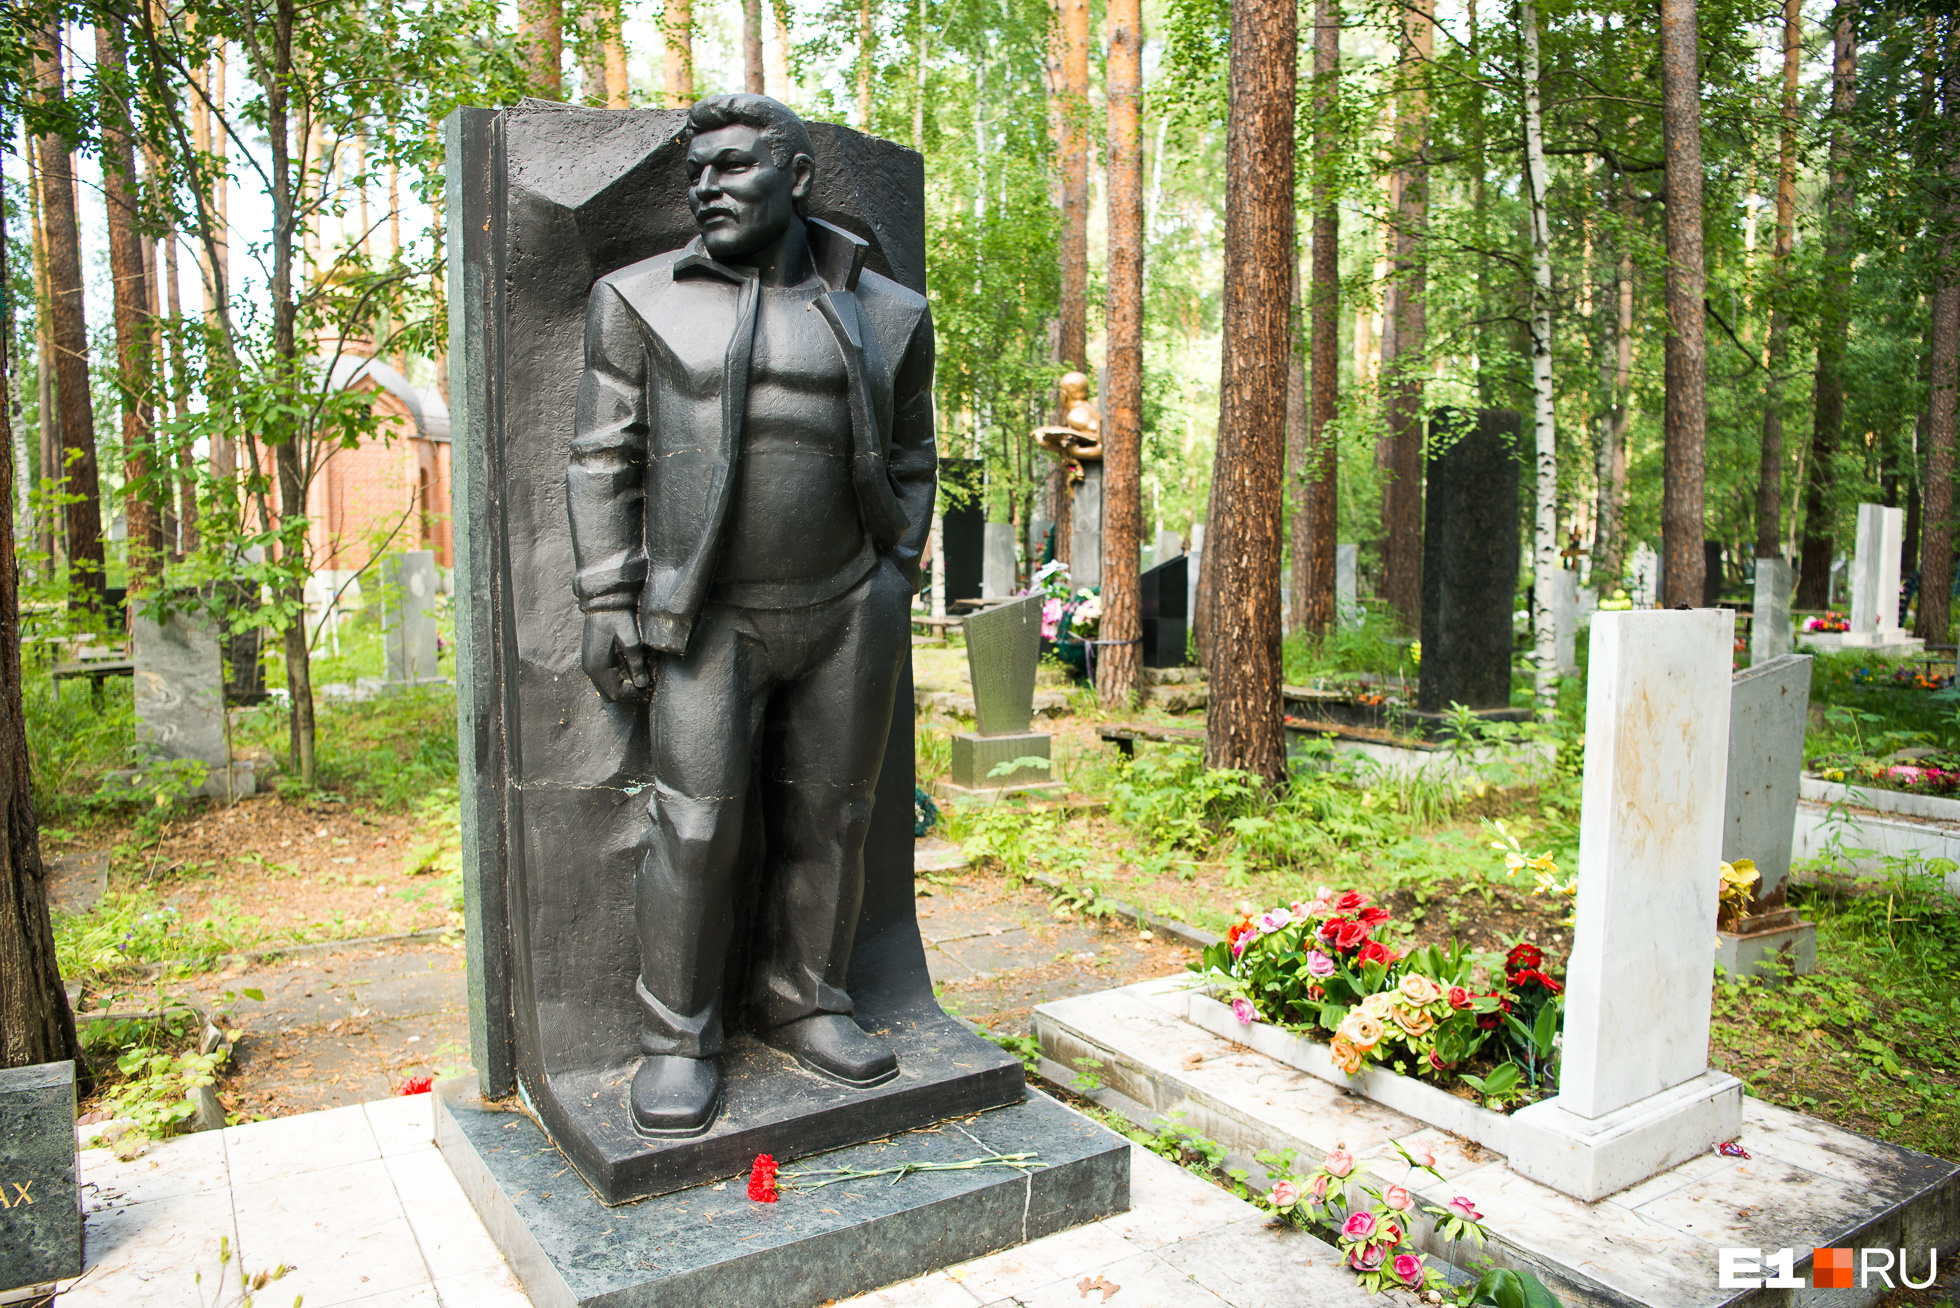 Рядом похоронен его друг, вор в законе Хакимджан Имьяминов по прозвищу Бурма. Его застрелили возле собственного дома в Екатеринбурге